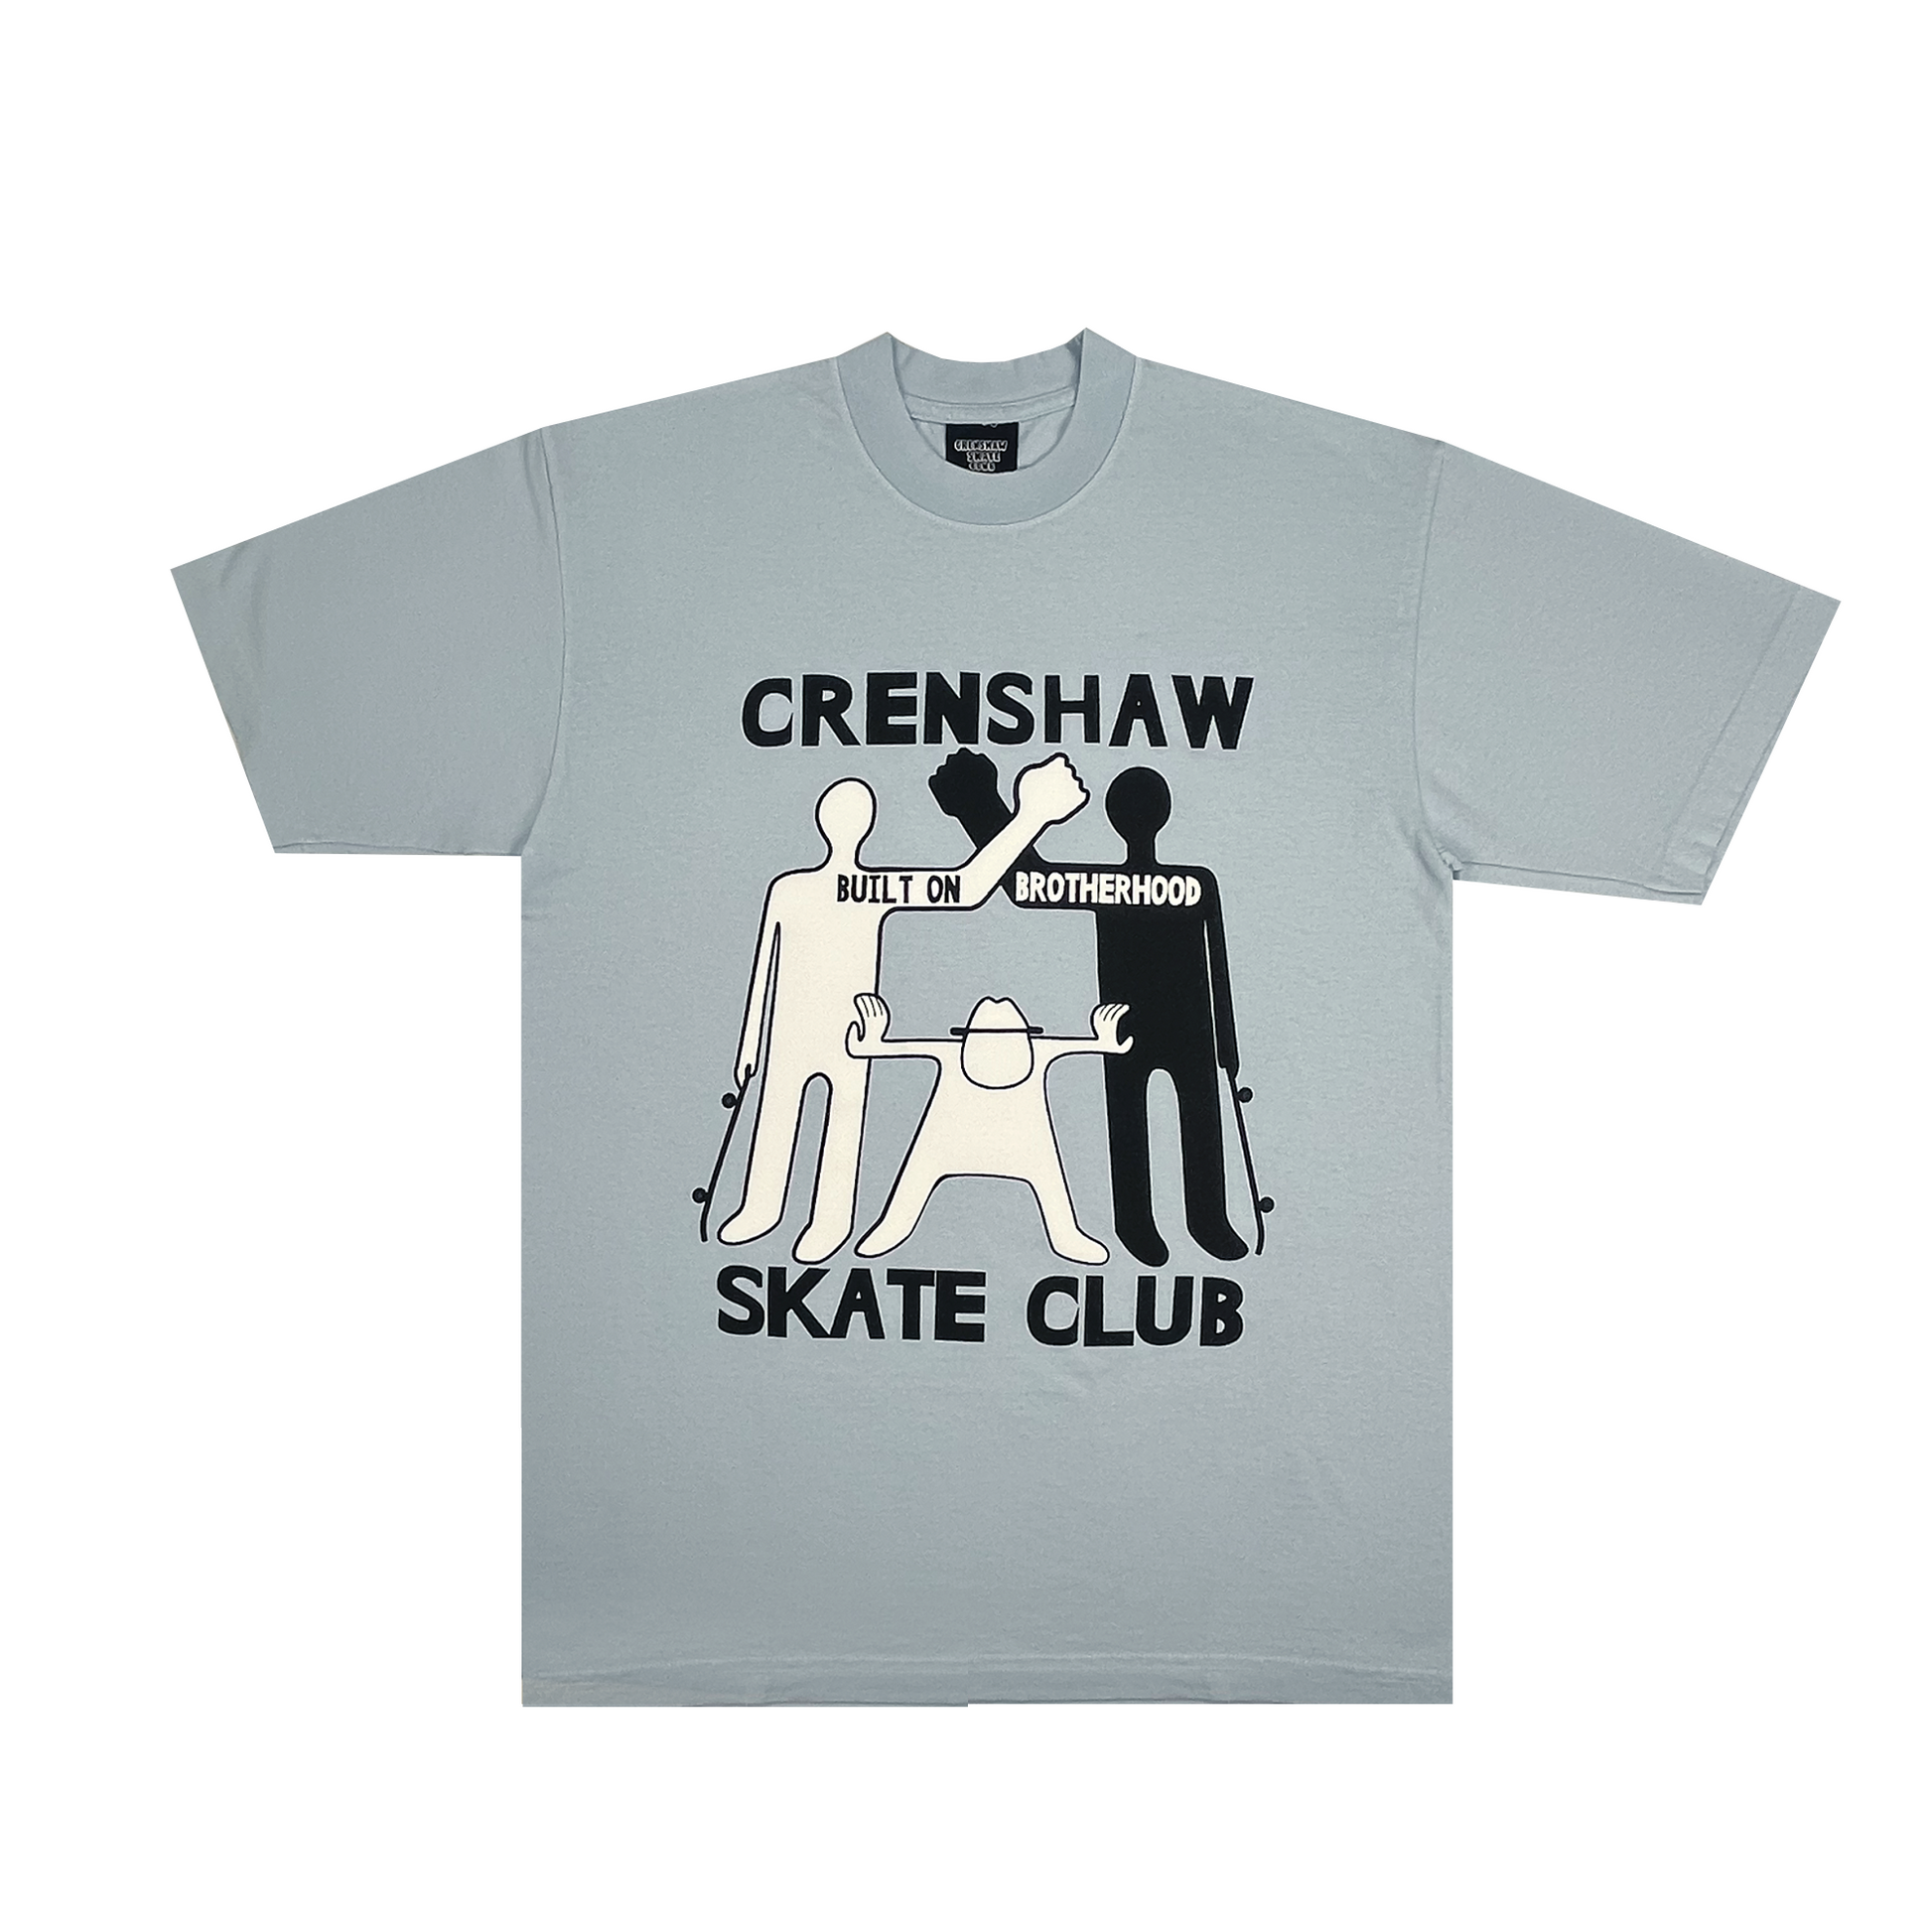 販売アウトレット CSC(crenshaw skate club) ロングT shirt - トップス